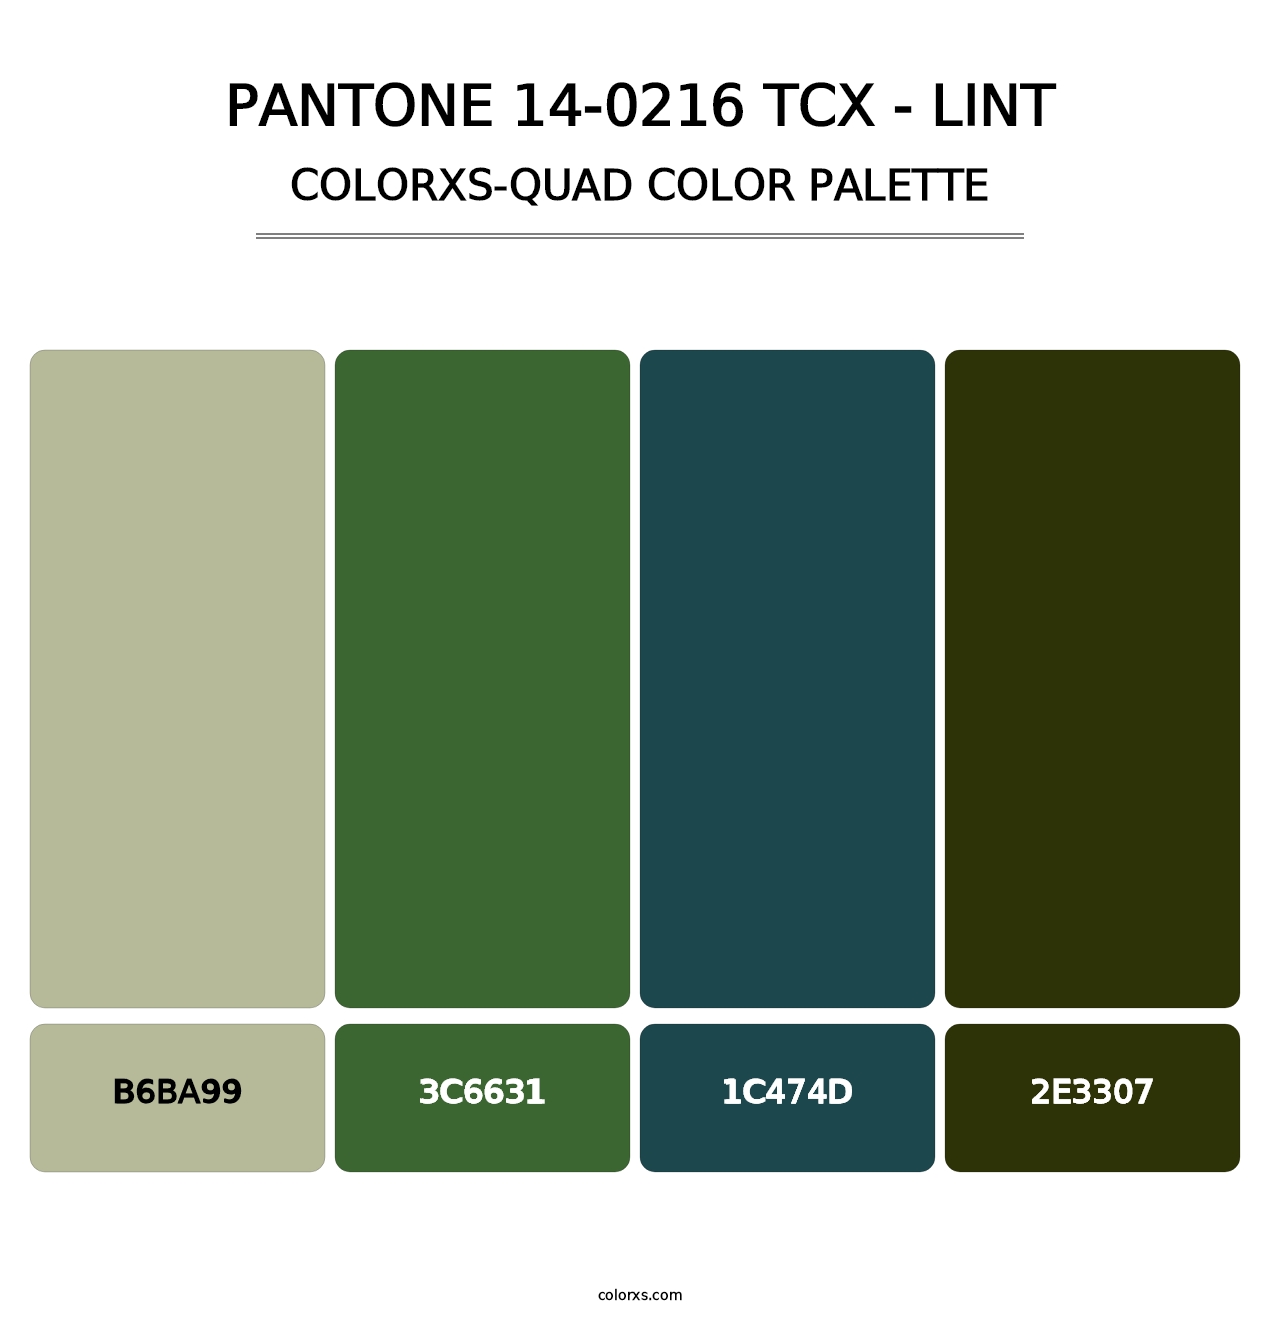 PANTONE 14-0216 TCX - Lint - Colorxs Quad Palette